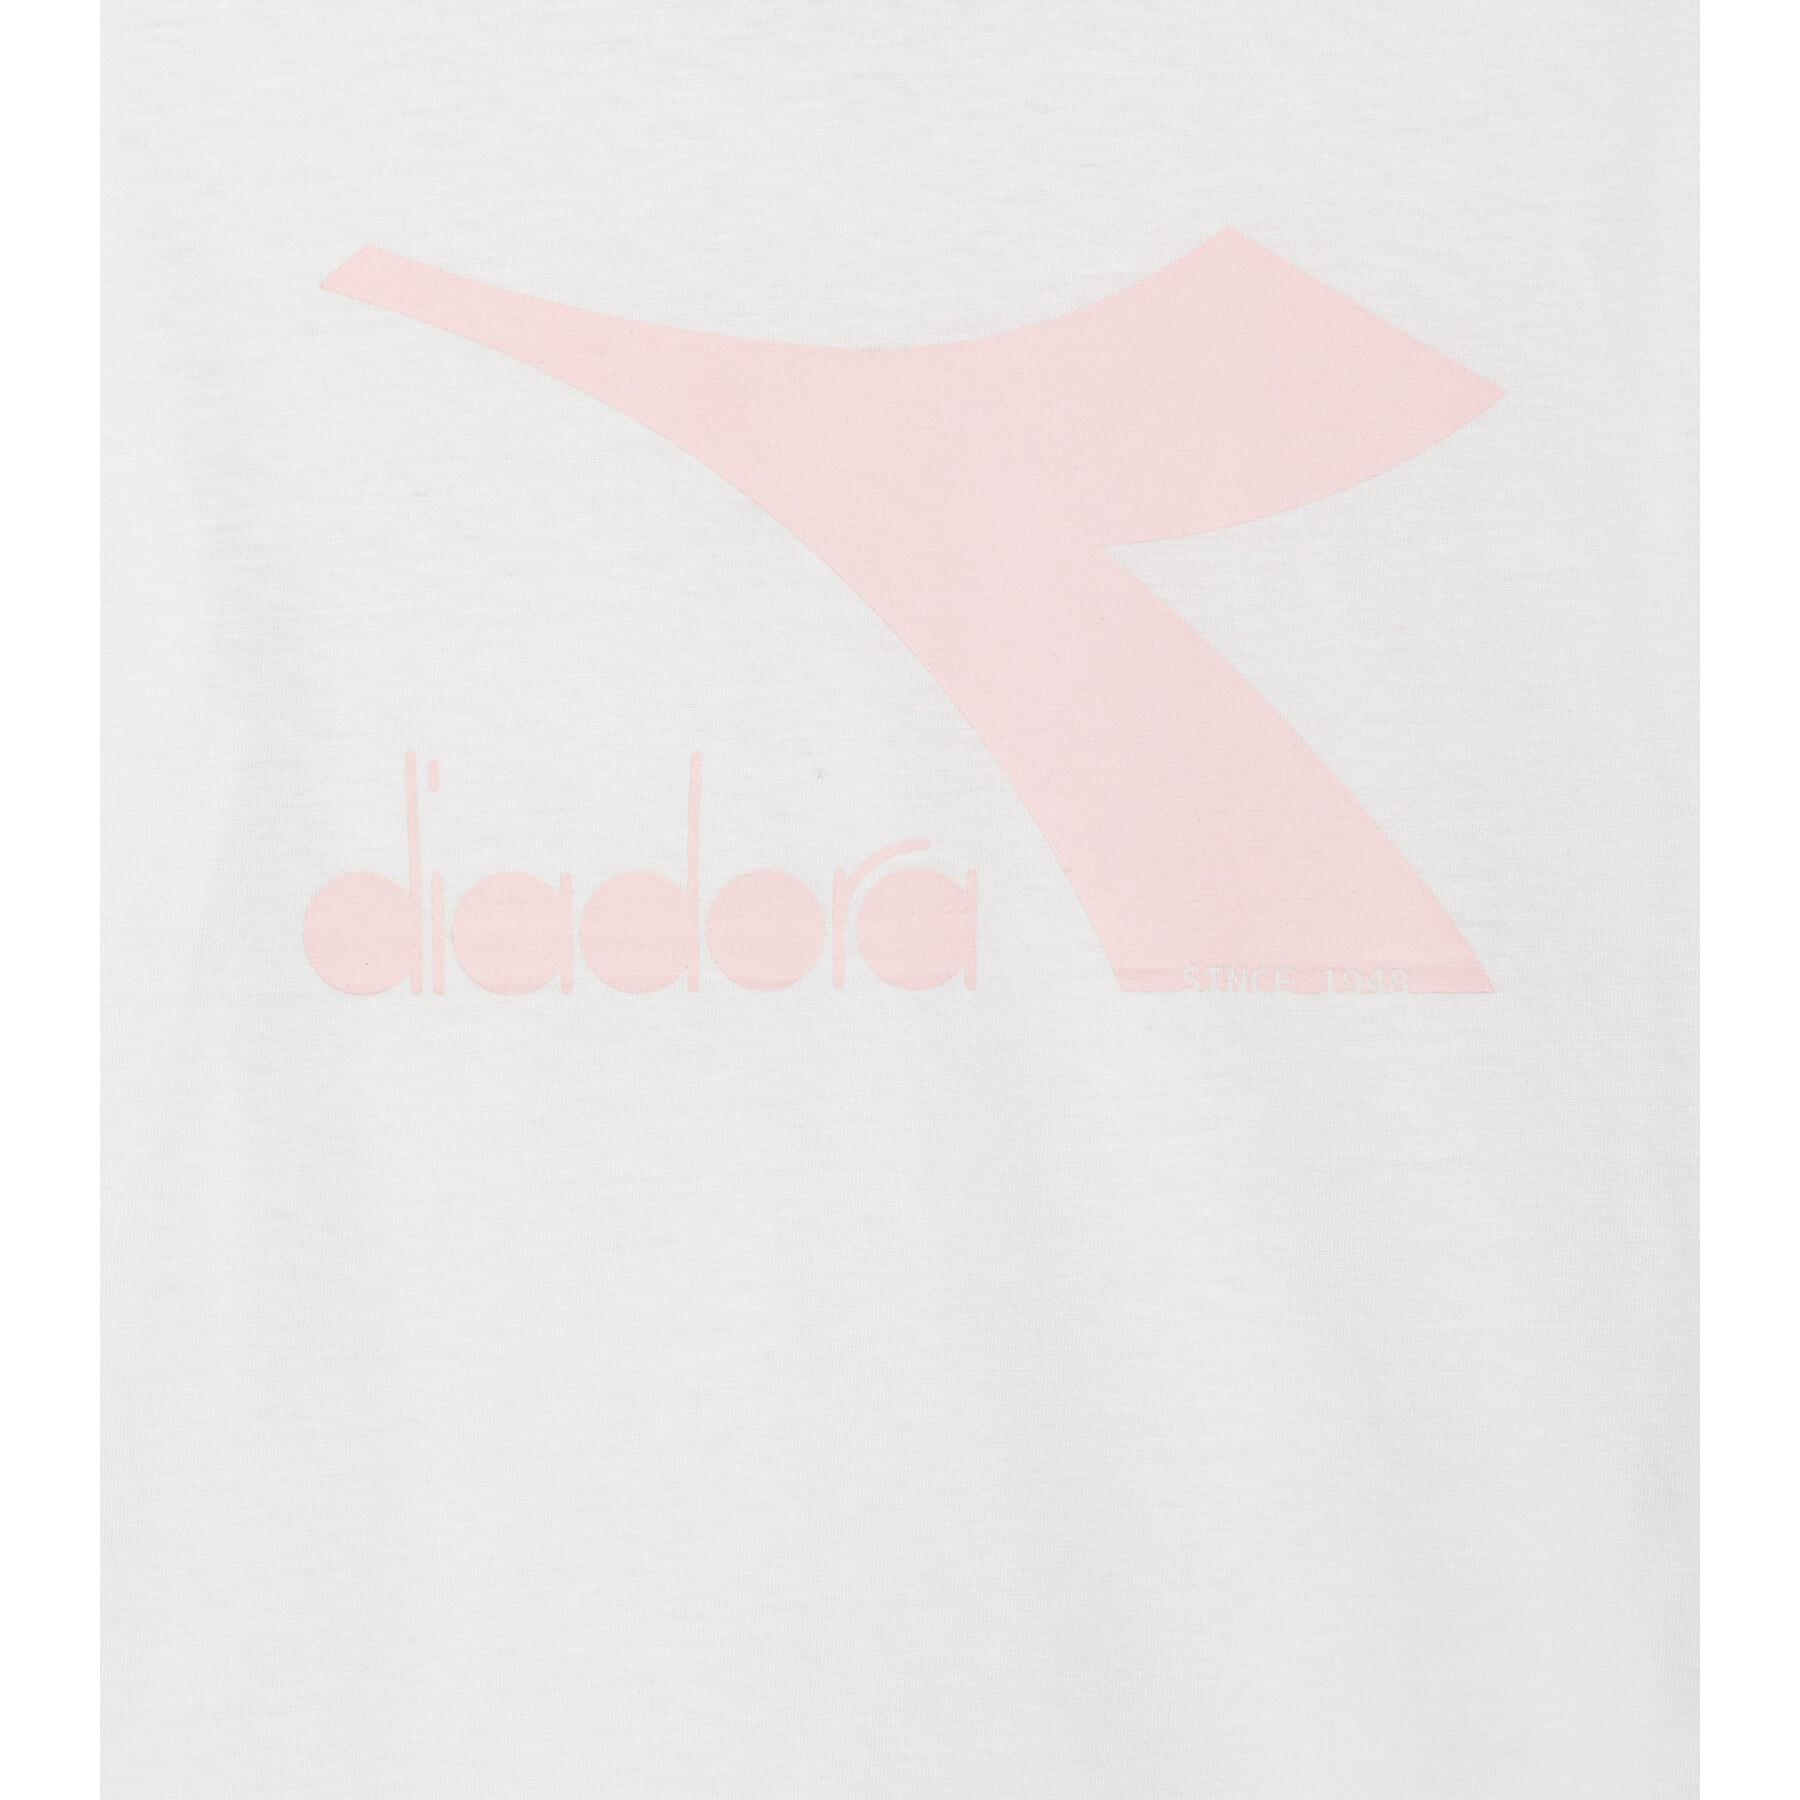 T-shirt enfant Diadora